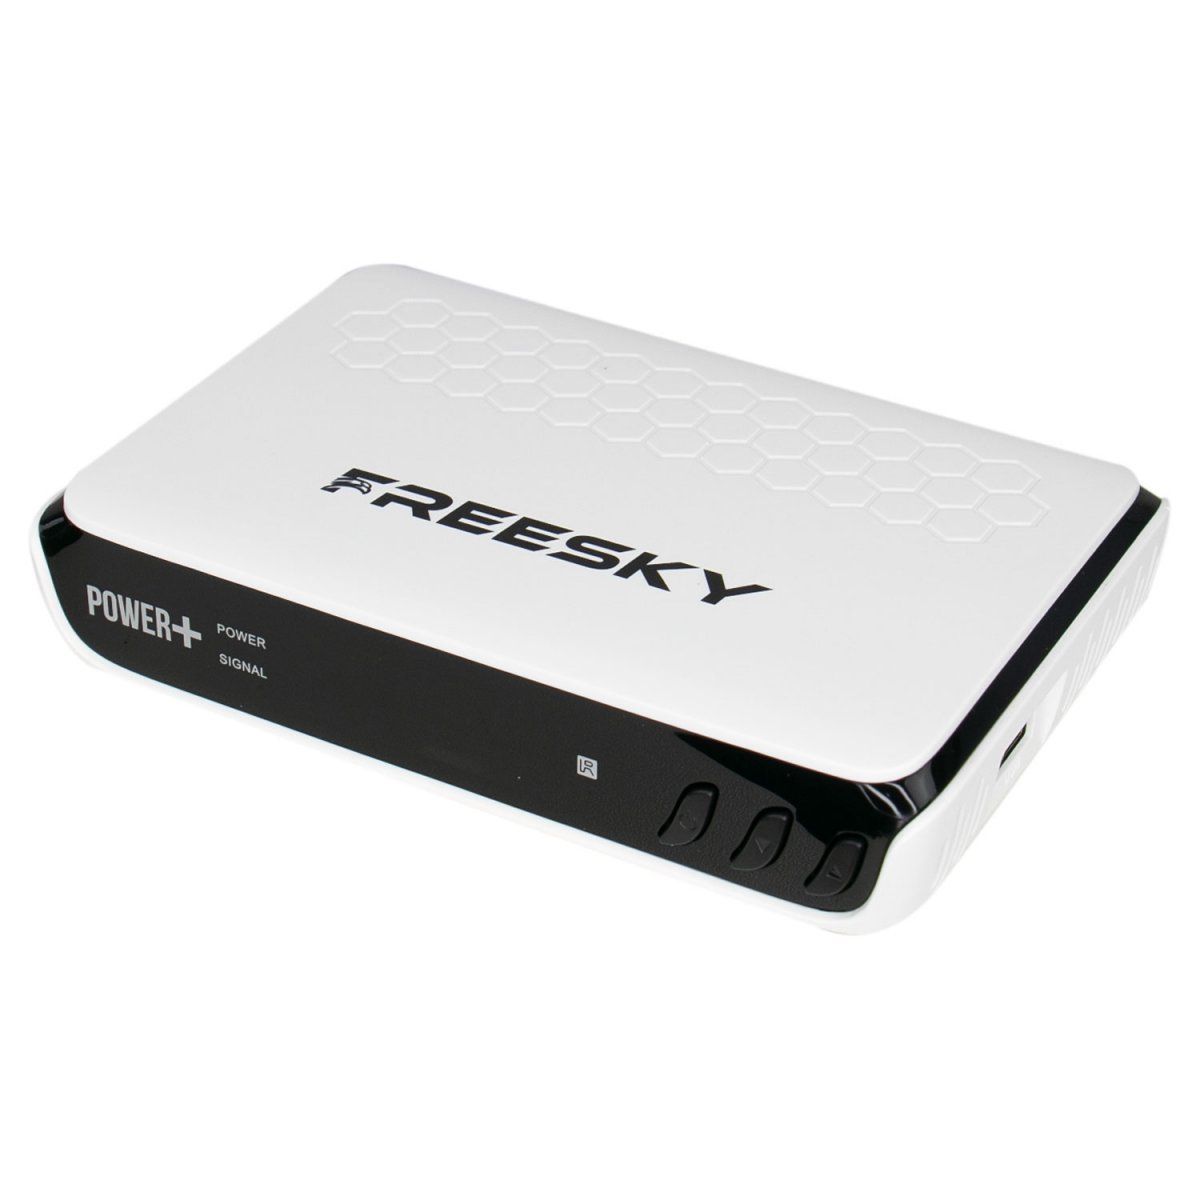 freesky - Freesky Power + Plus Atualização V1.17 Cfe472361cb9f319cf6a7112268ae8ce.jpg-1200x1200